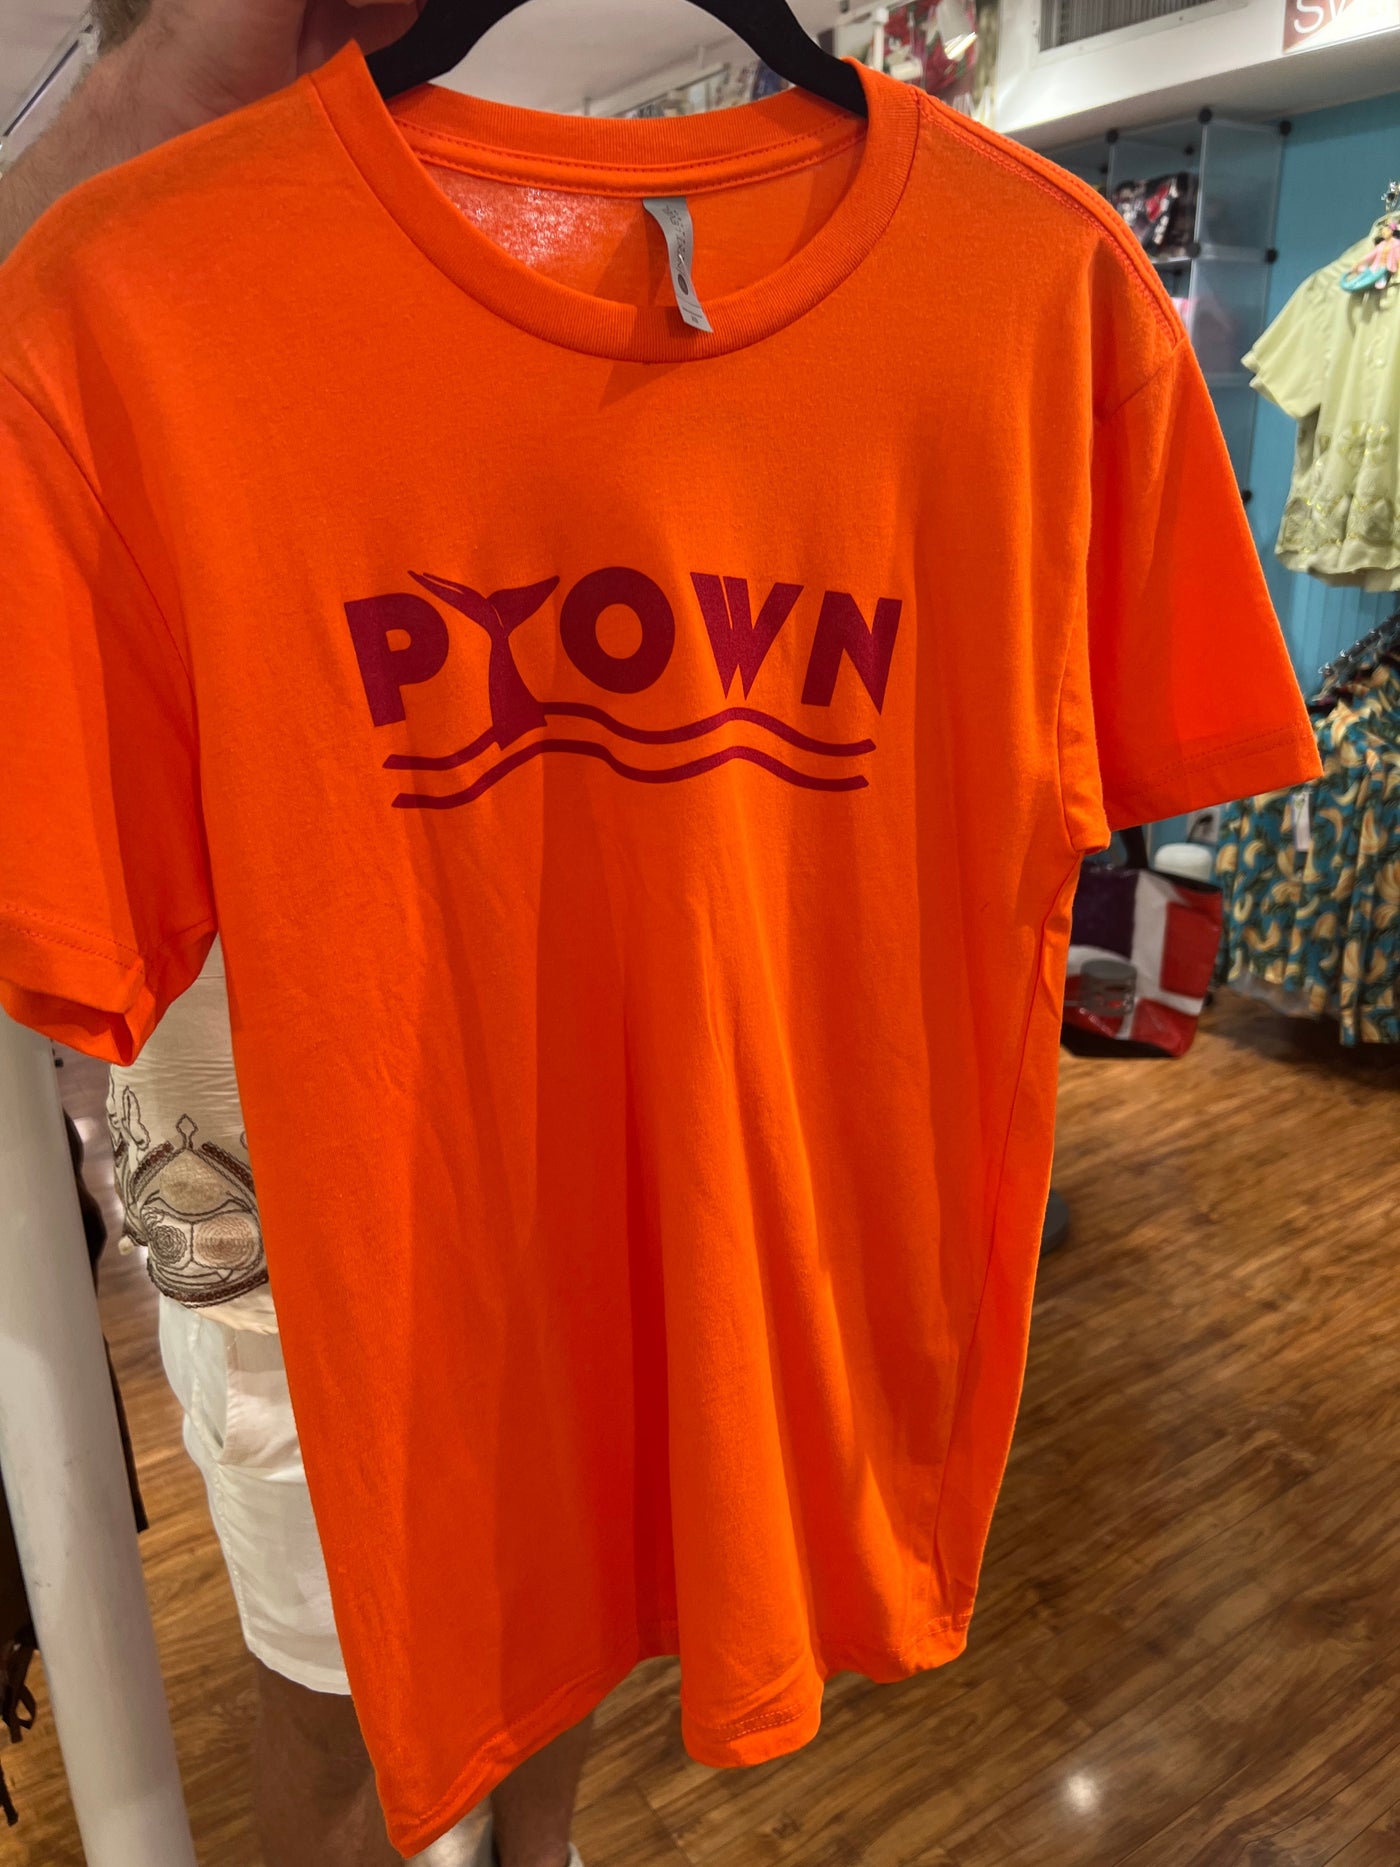 Hook's Orange PTown Tshirt